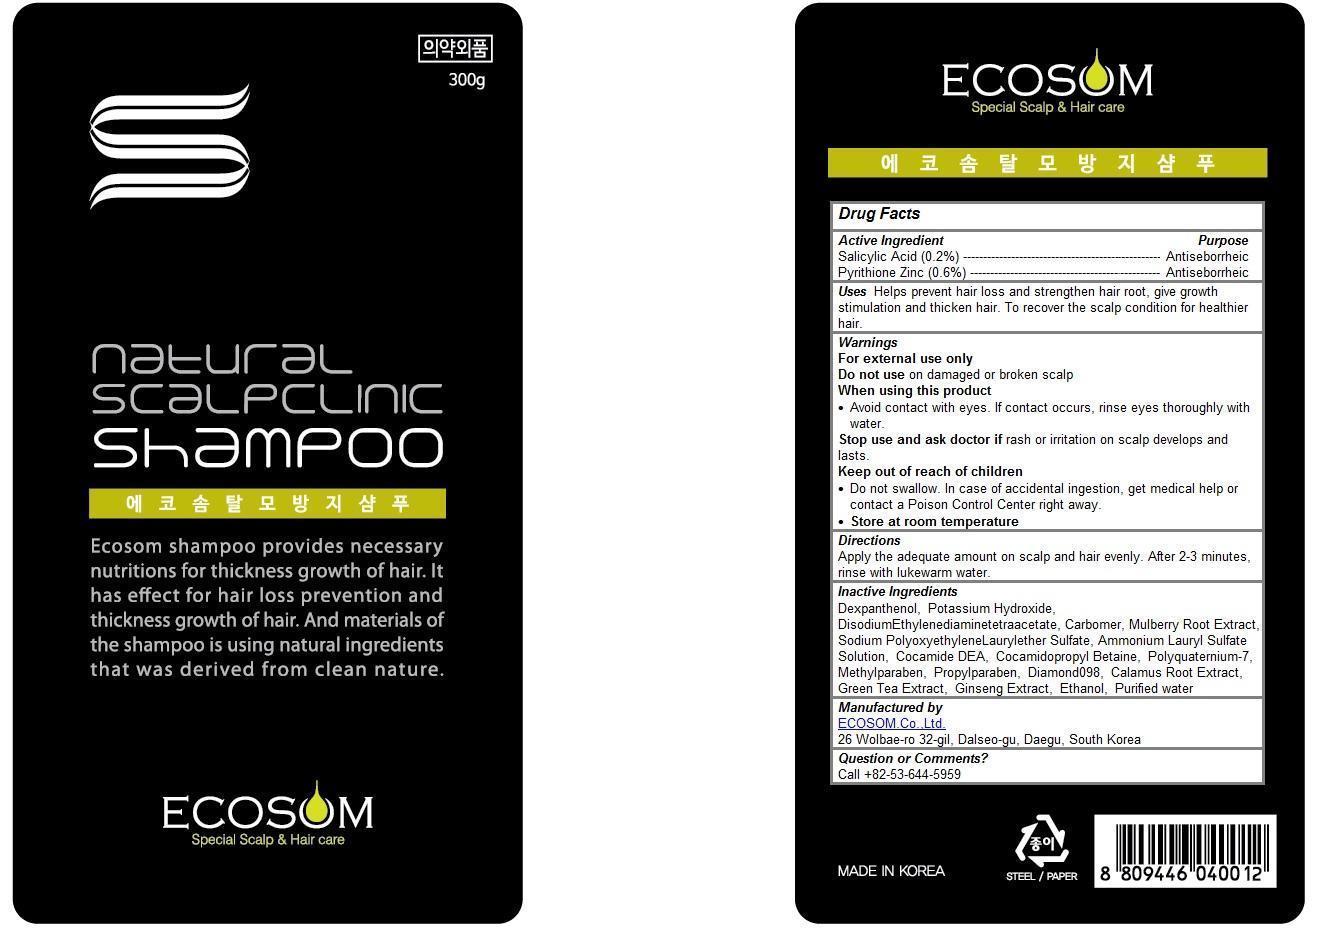 ecosom shampoo antiseborrheic